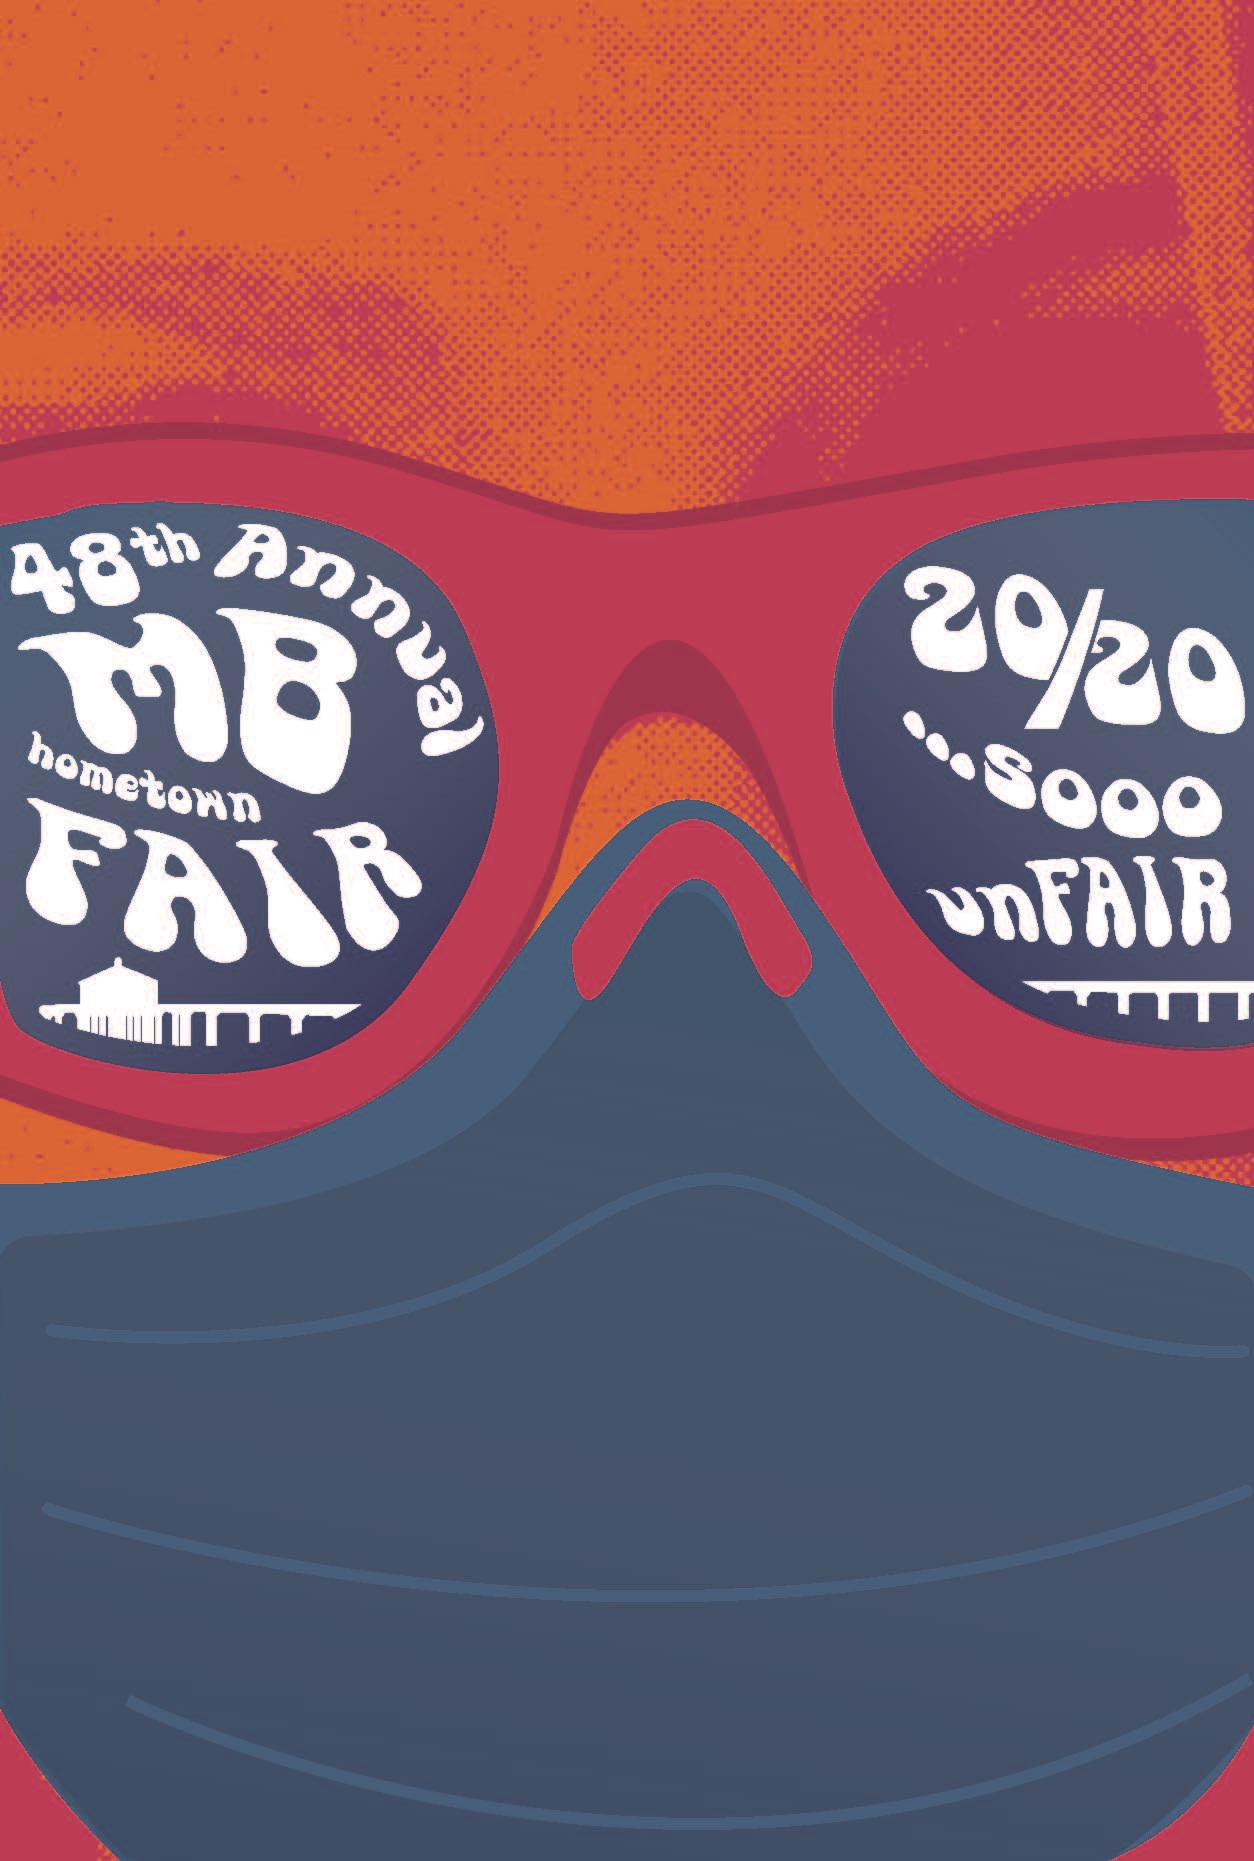 Manhattan Beach Hometown Fair Merchandise is 'So unFAIR' | Manhattan